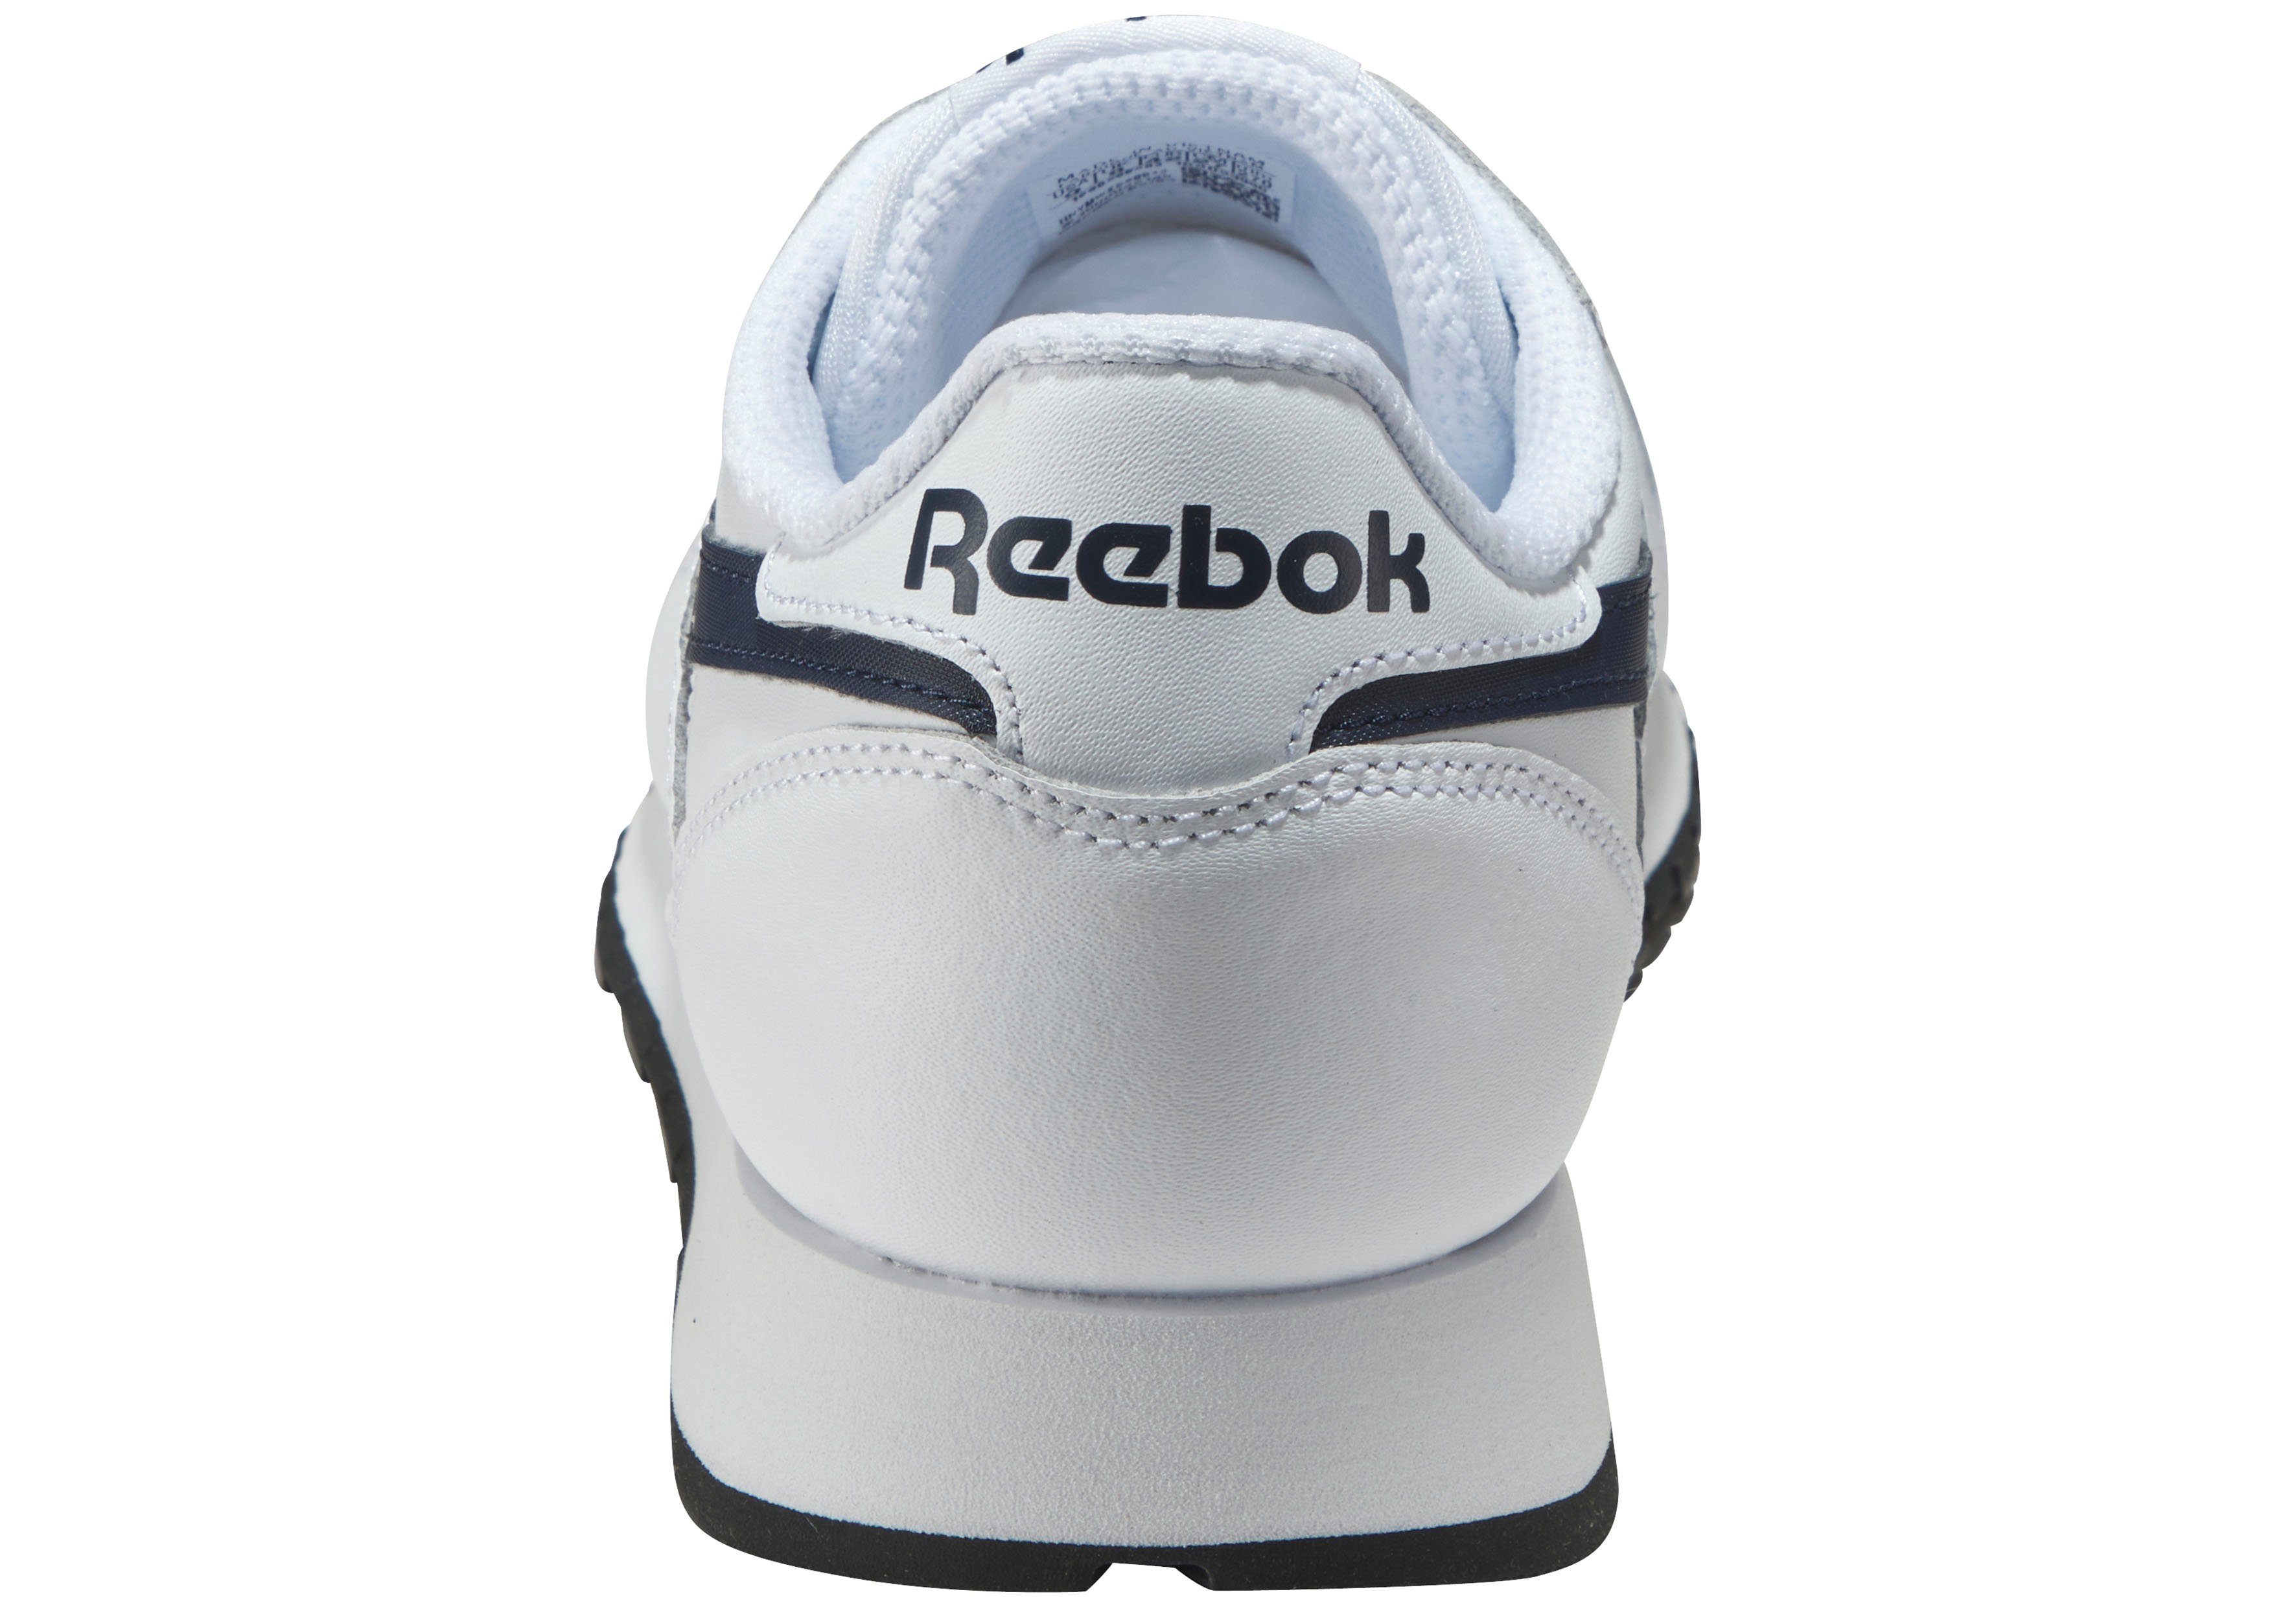 LEATHER weiß-schwarz Classic Sneaker CLASSIC Reebok